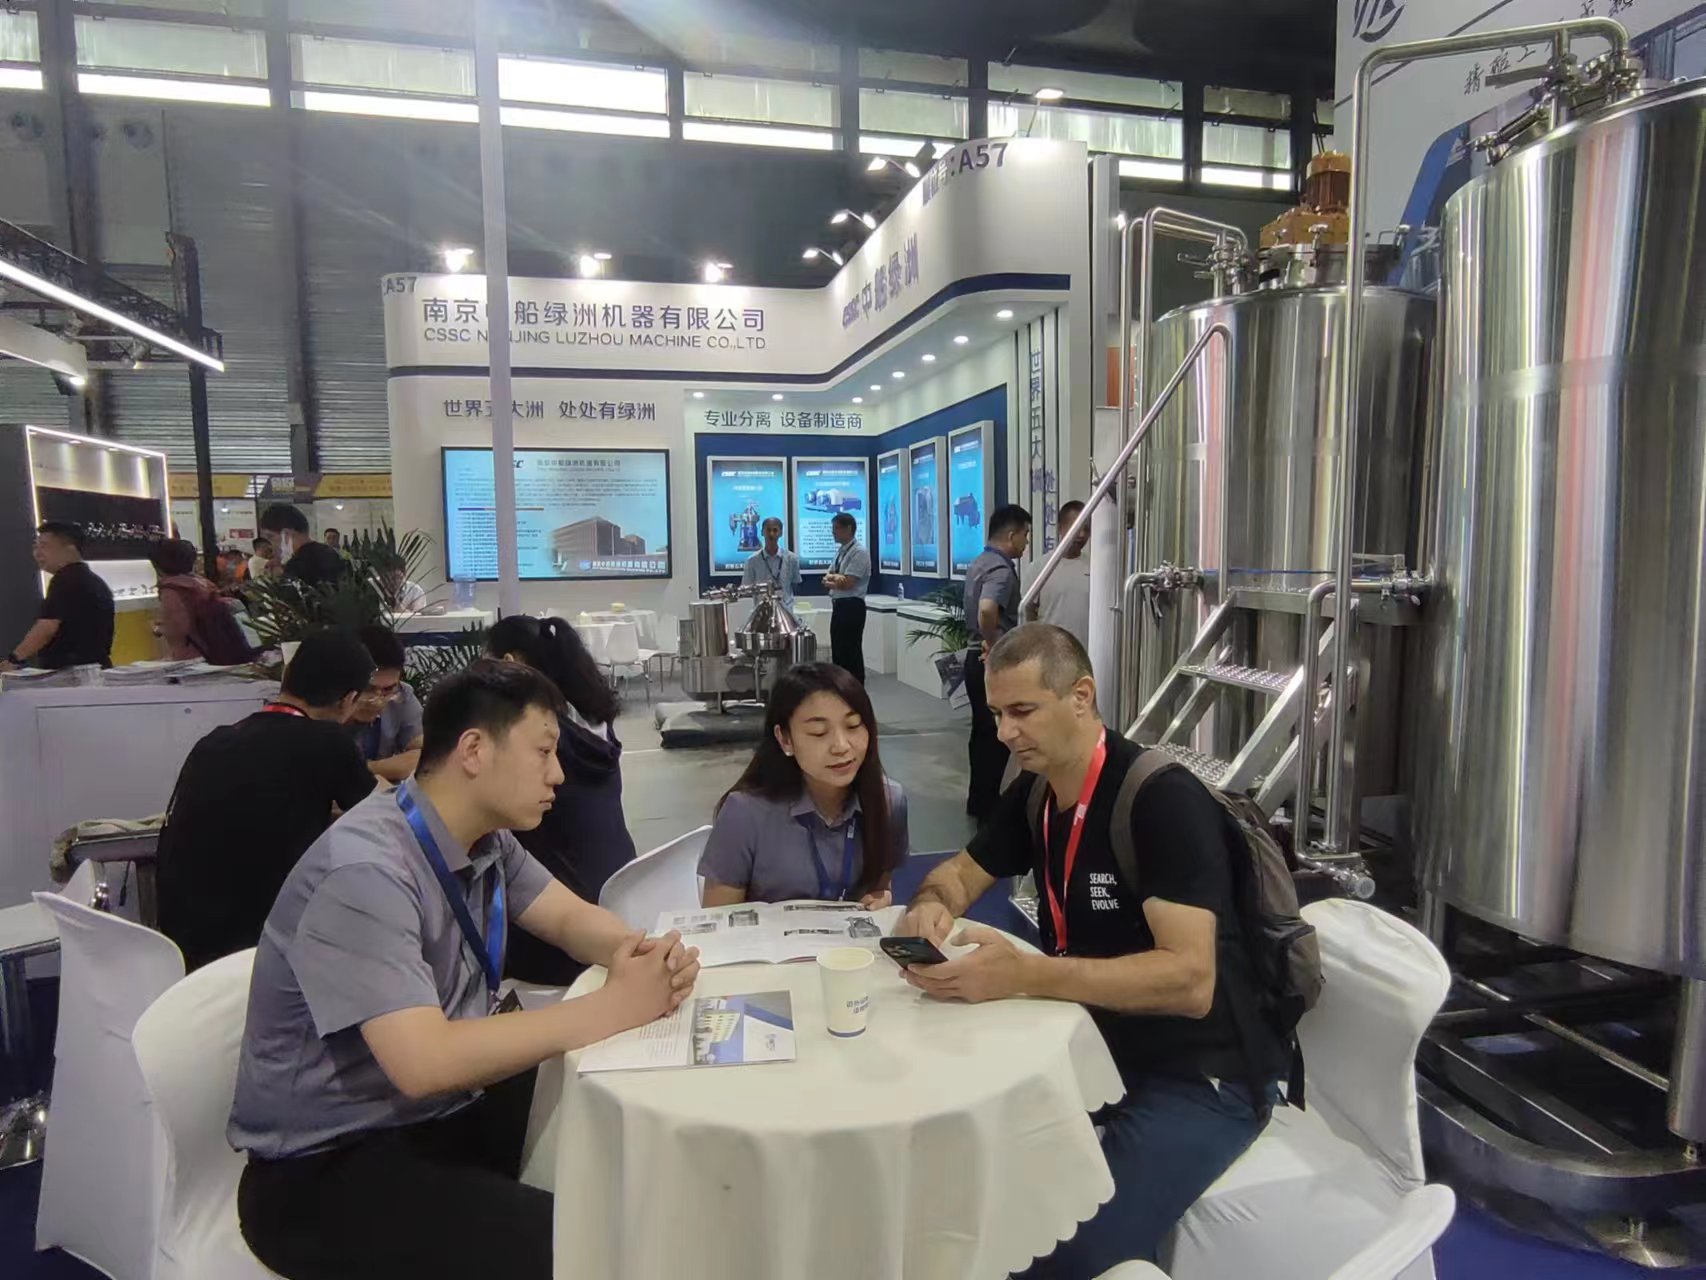 亚洲国际精酿啤酒会议暨展览会(CBCE 2023)